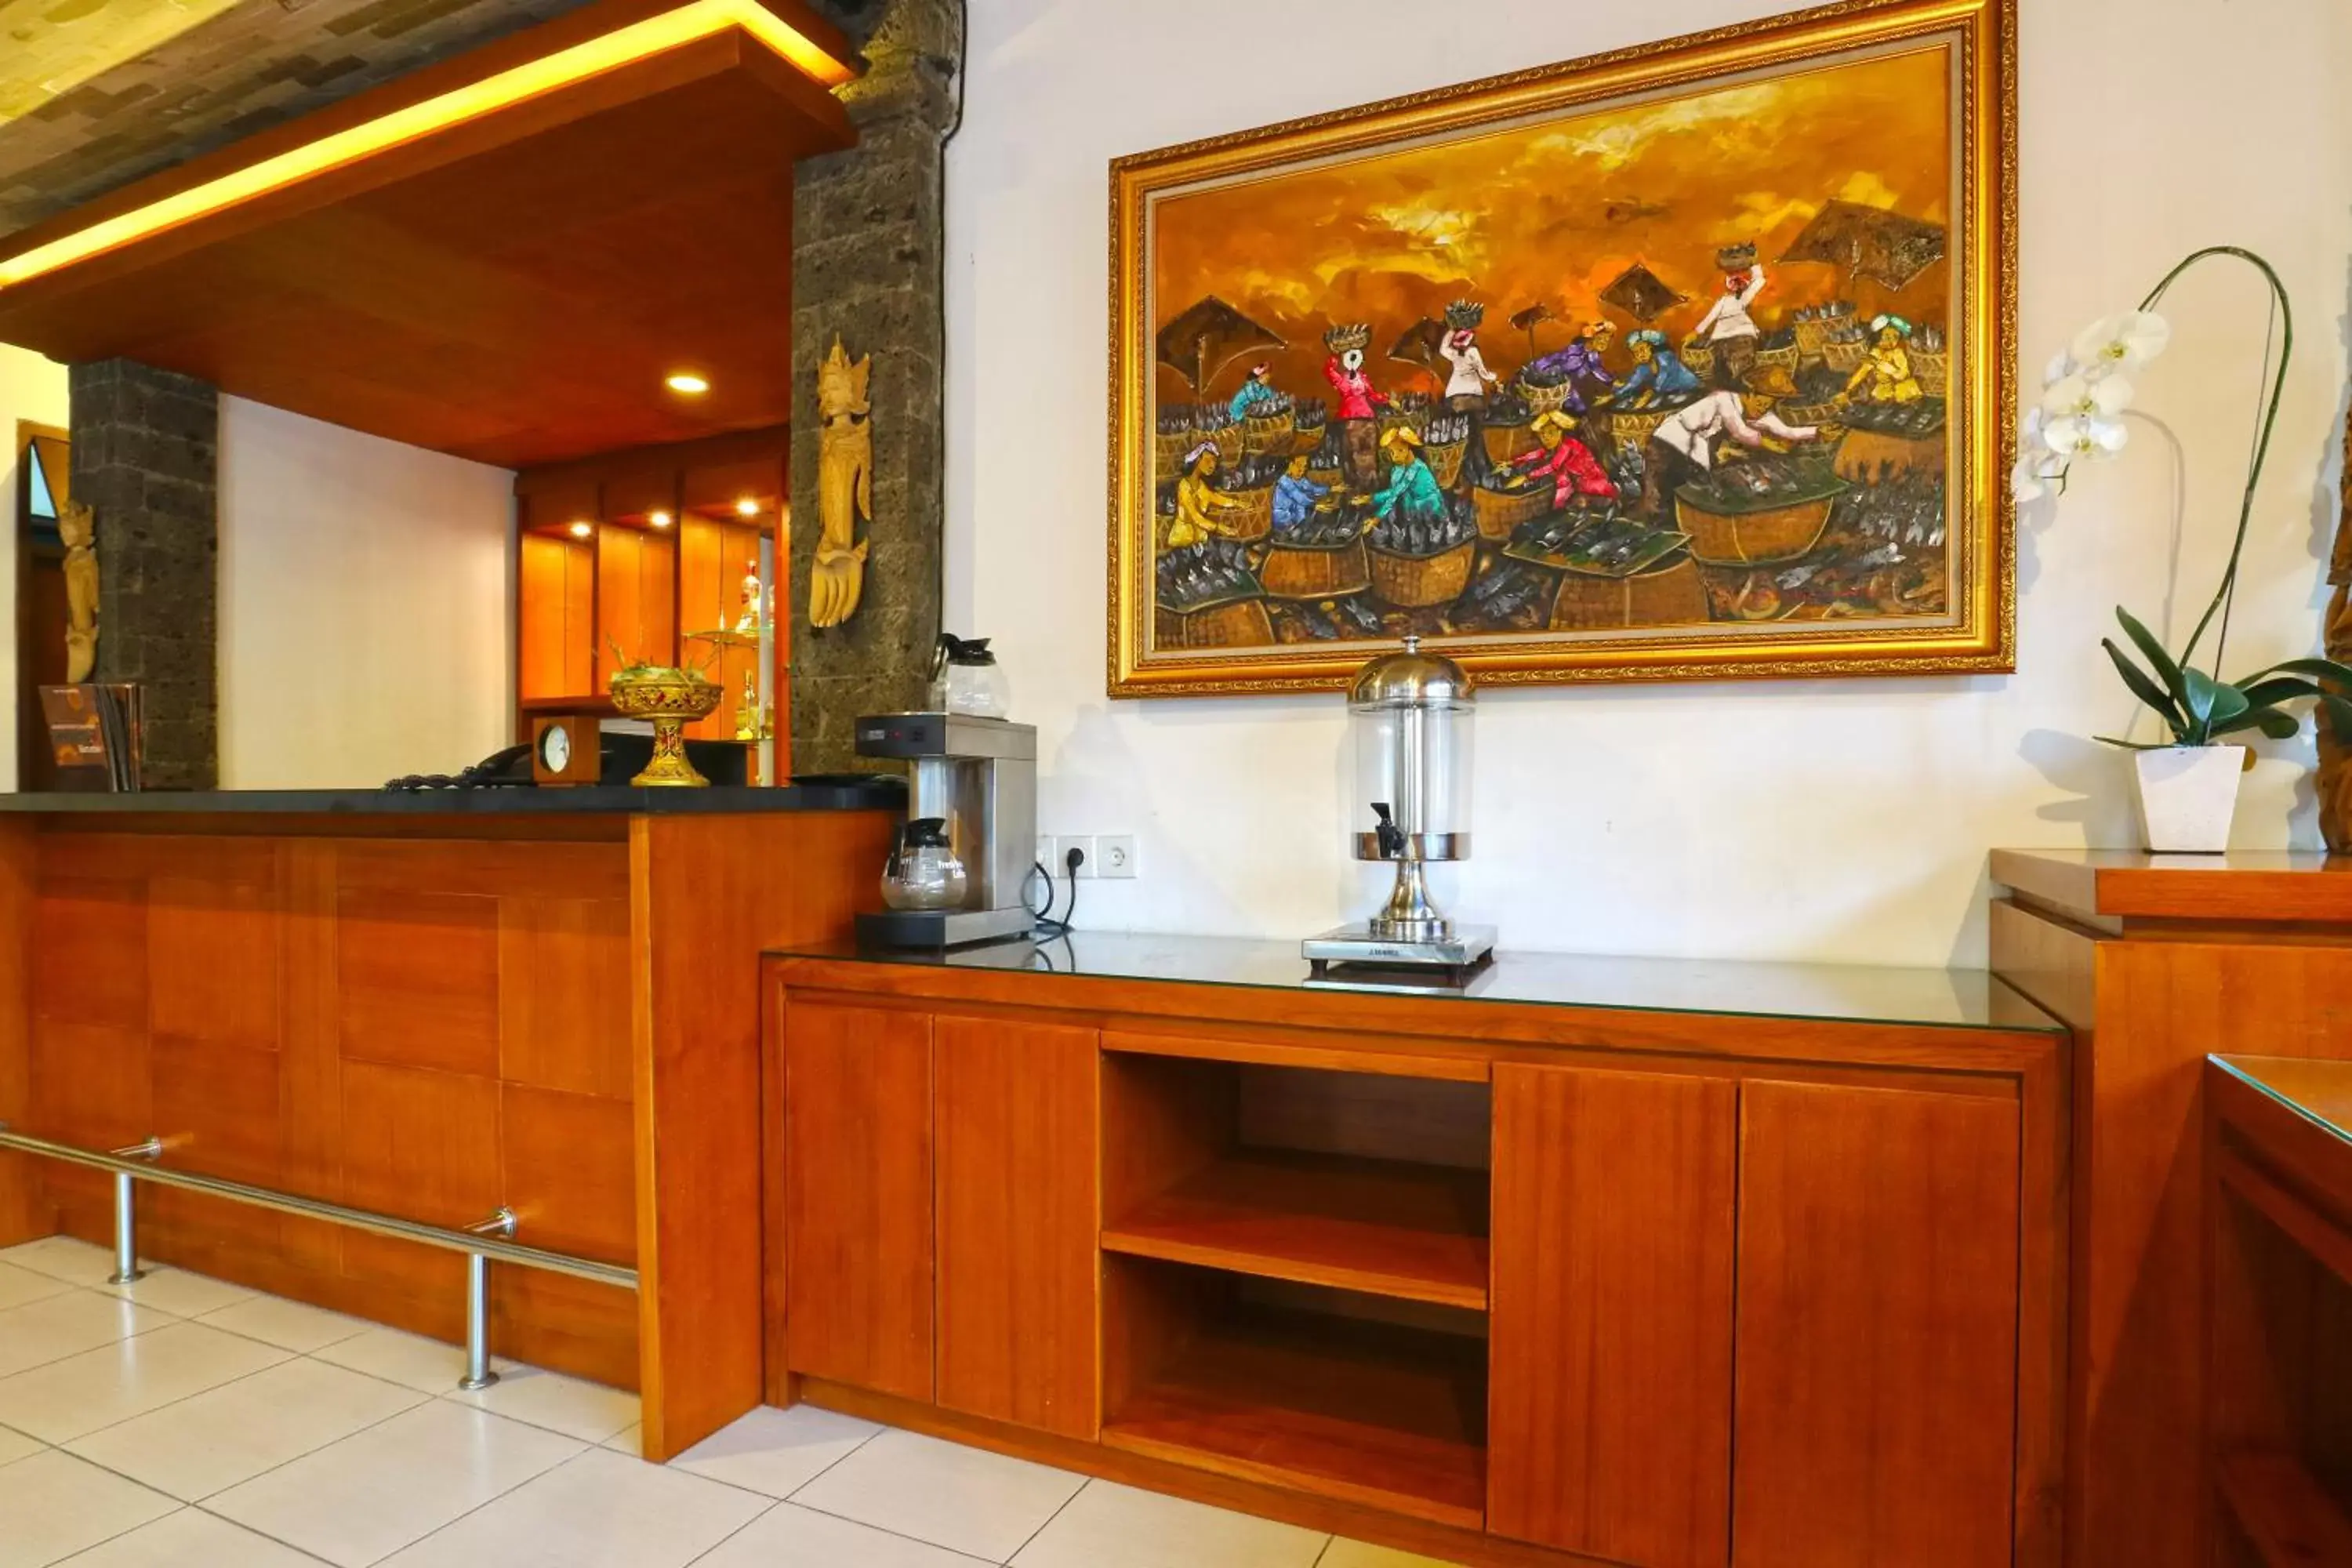 Coffee/tea facilities, Bathroom in Sinar Bali Hotel